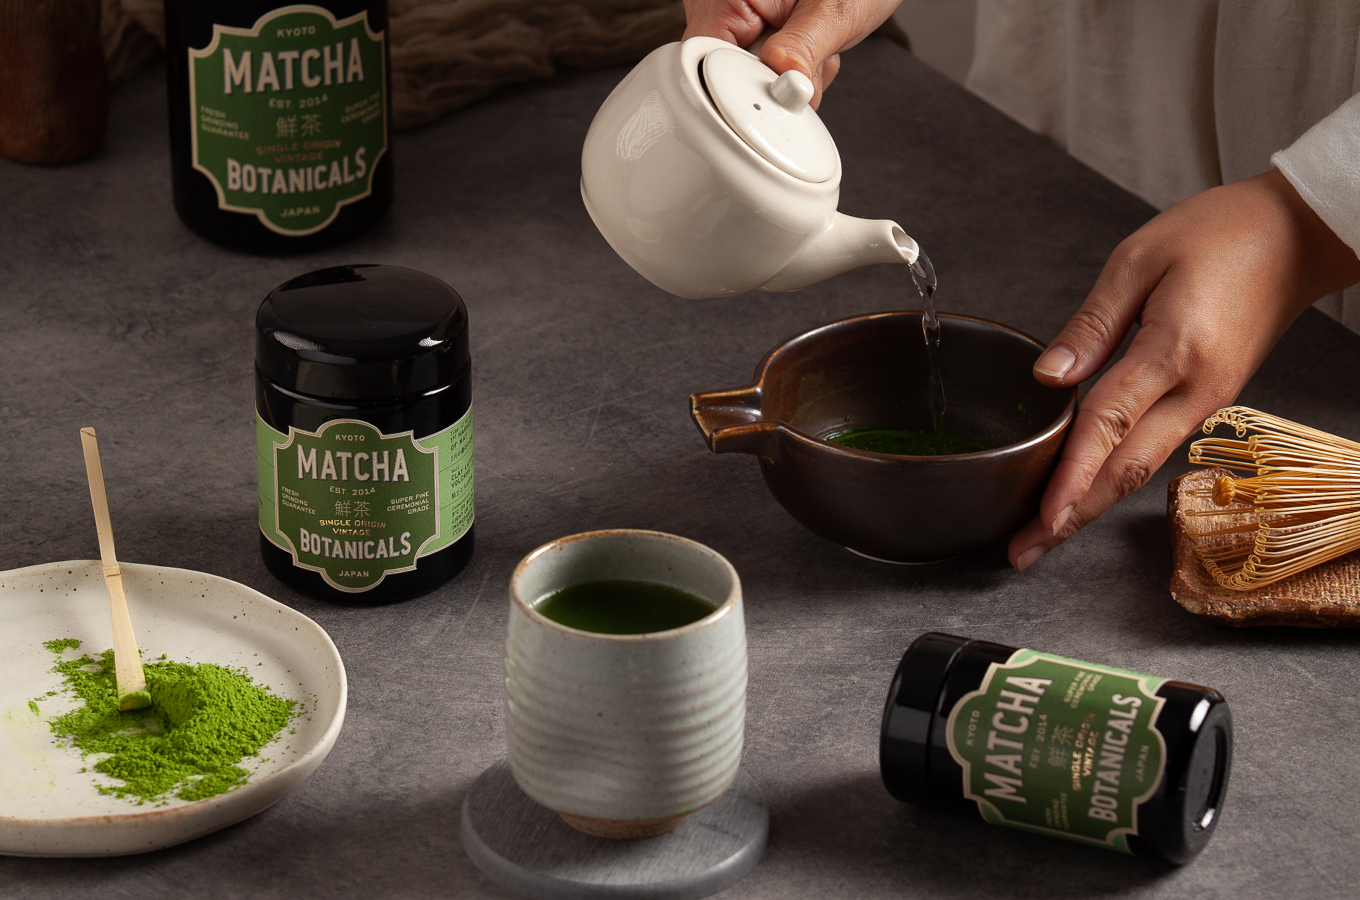 Les 7 bienfaits du thé matcha – MatchaDays